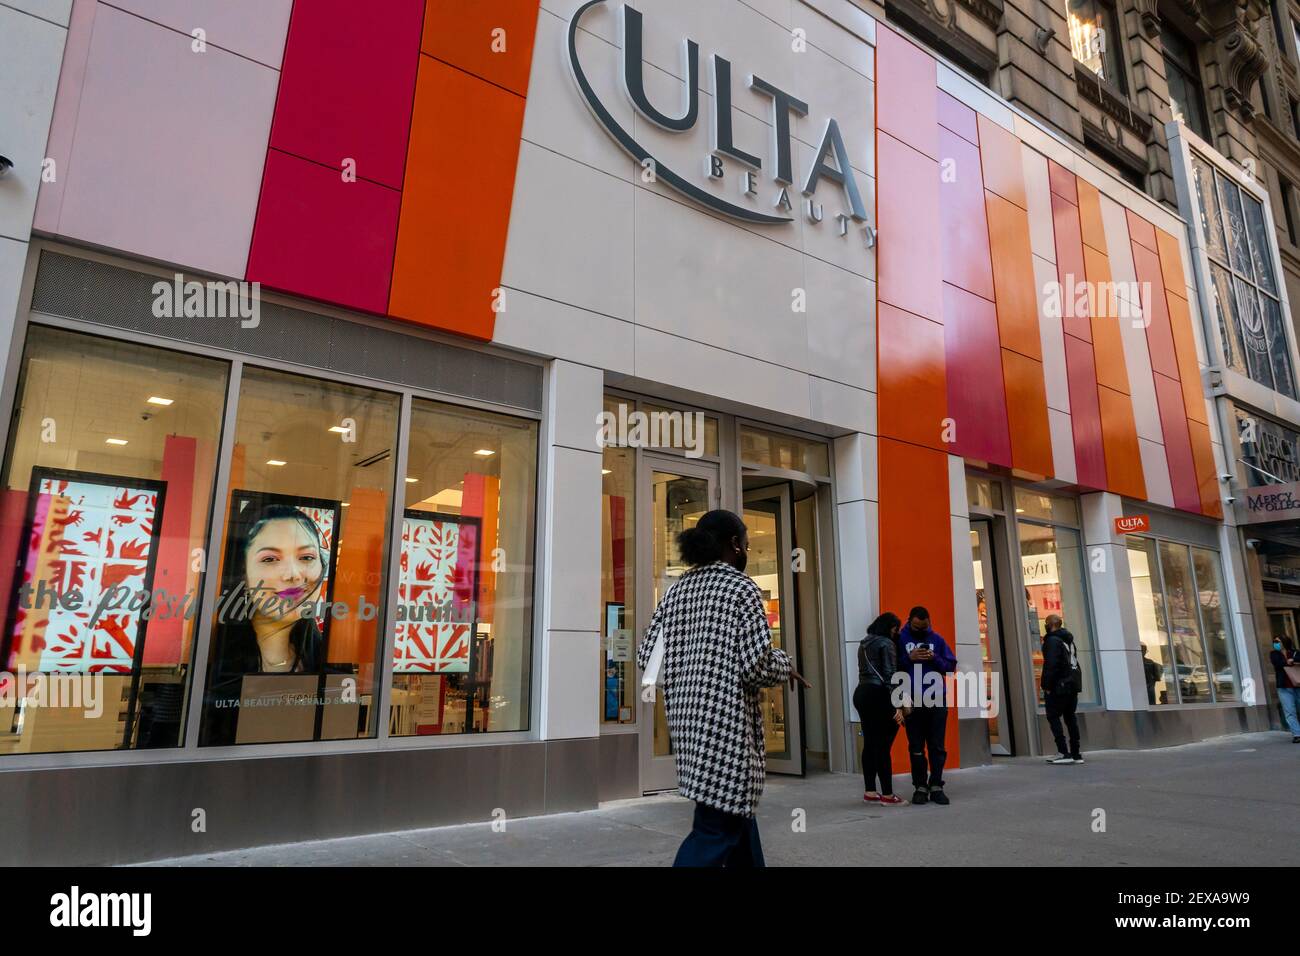 Una nueva rama de la cadena de Maquillaje y Belleza, Ulta Beauty, ubicada  en el distrito comercial Herald Square de Nueva York durante su apertura  suave, el miércoles 3 de marzo de